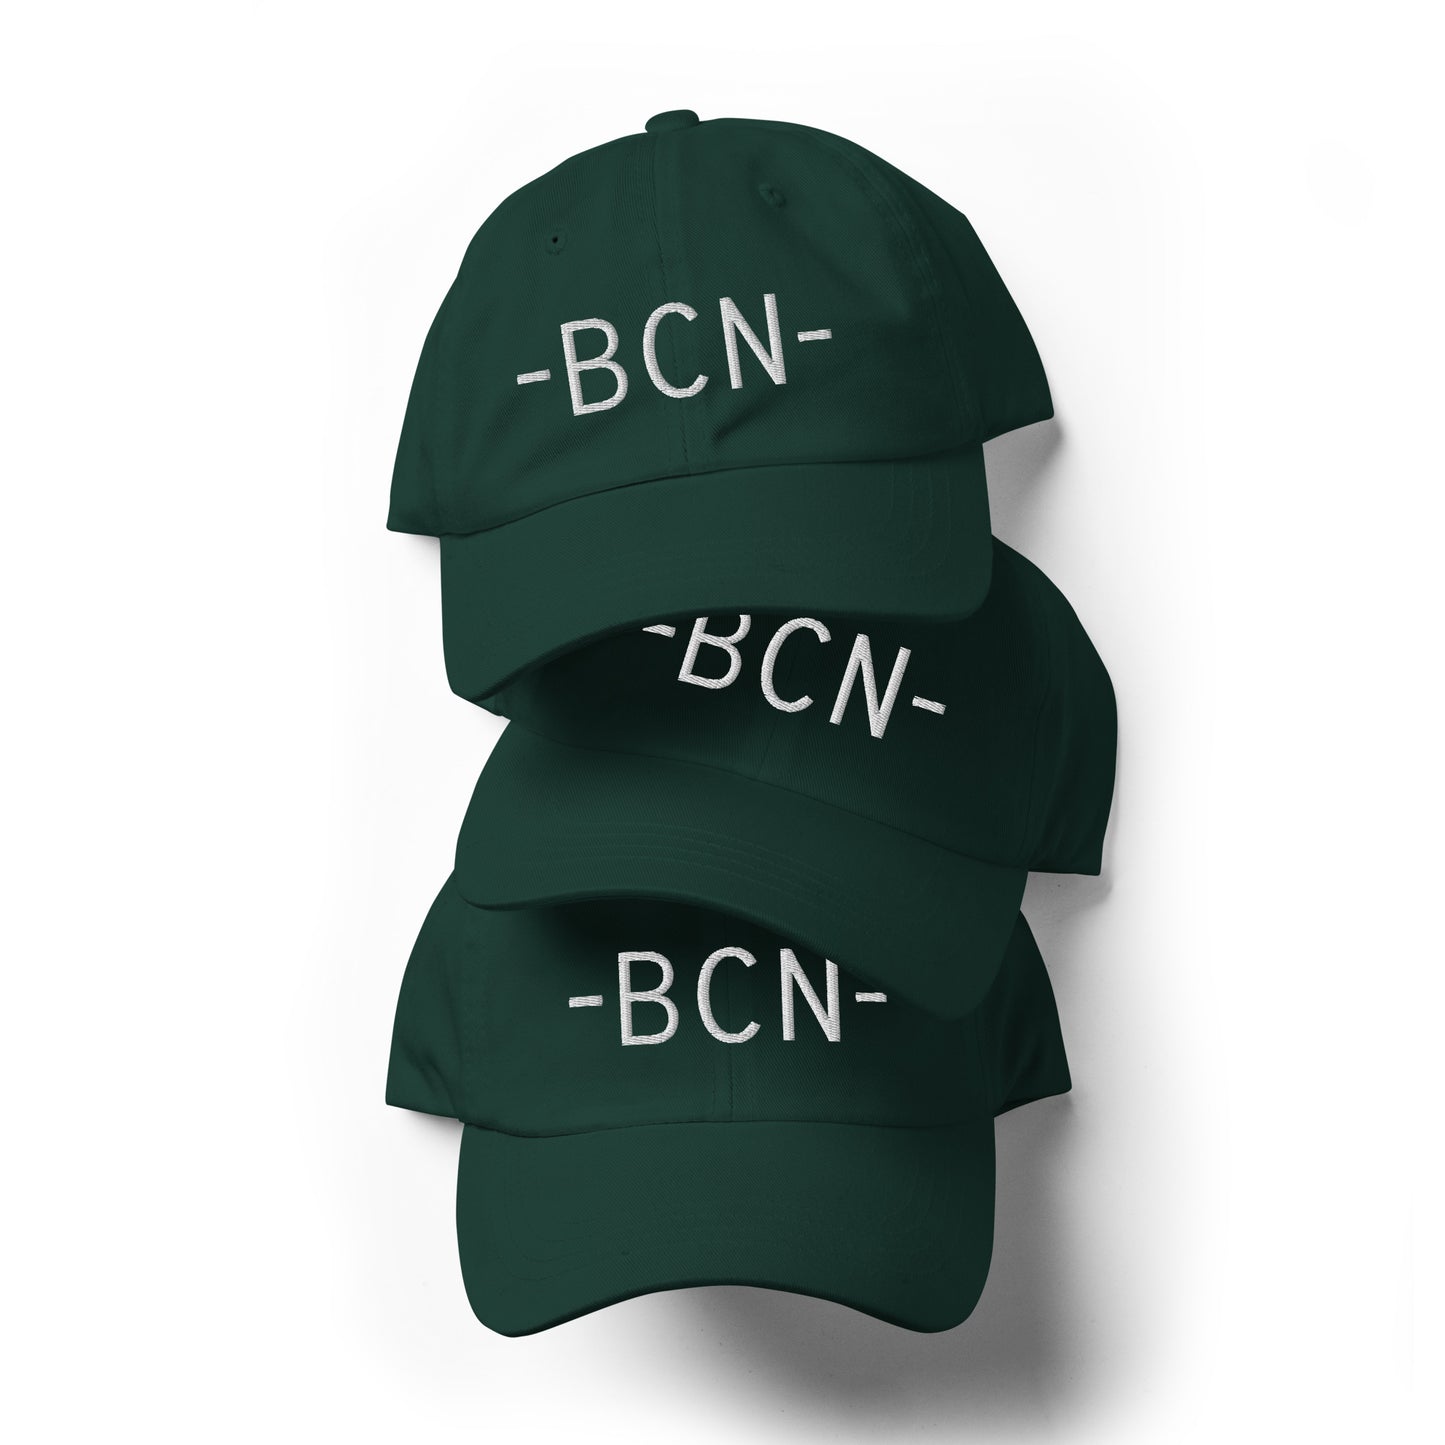 Souvenir Baseball Cap - White • BCN Barcelona • YHM Designs - Image 05